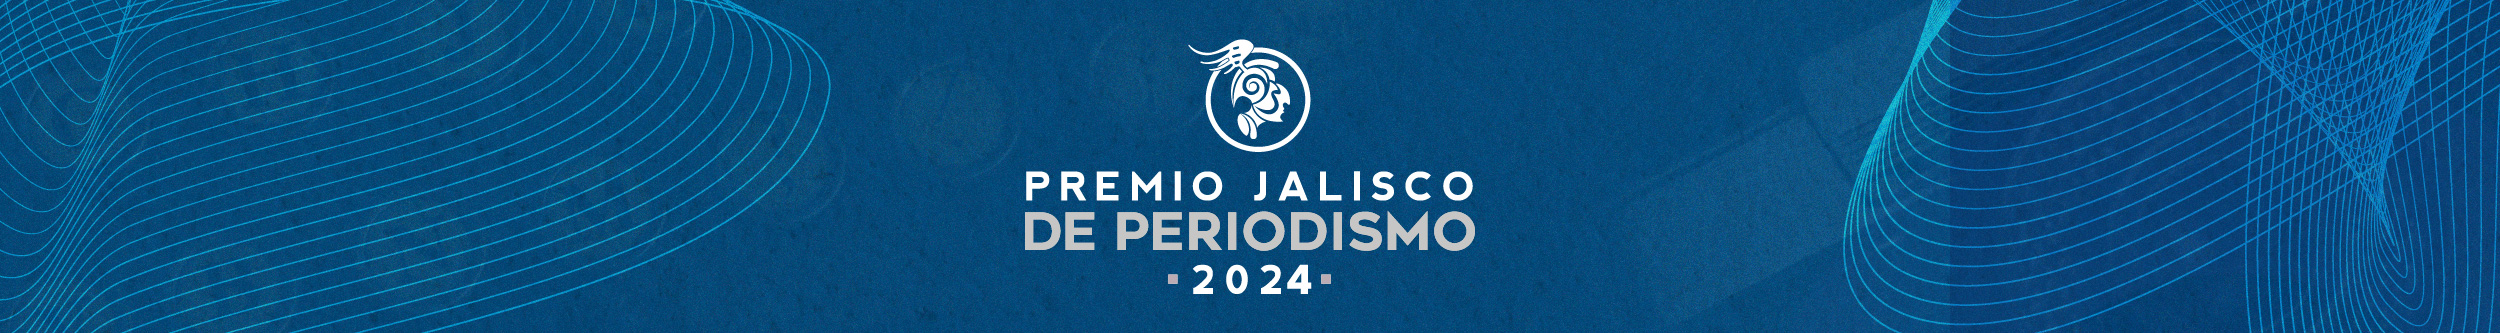 Encabezado Premio Jalisco de Periodismo 2024